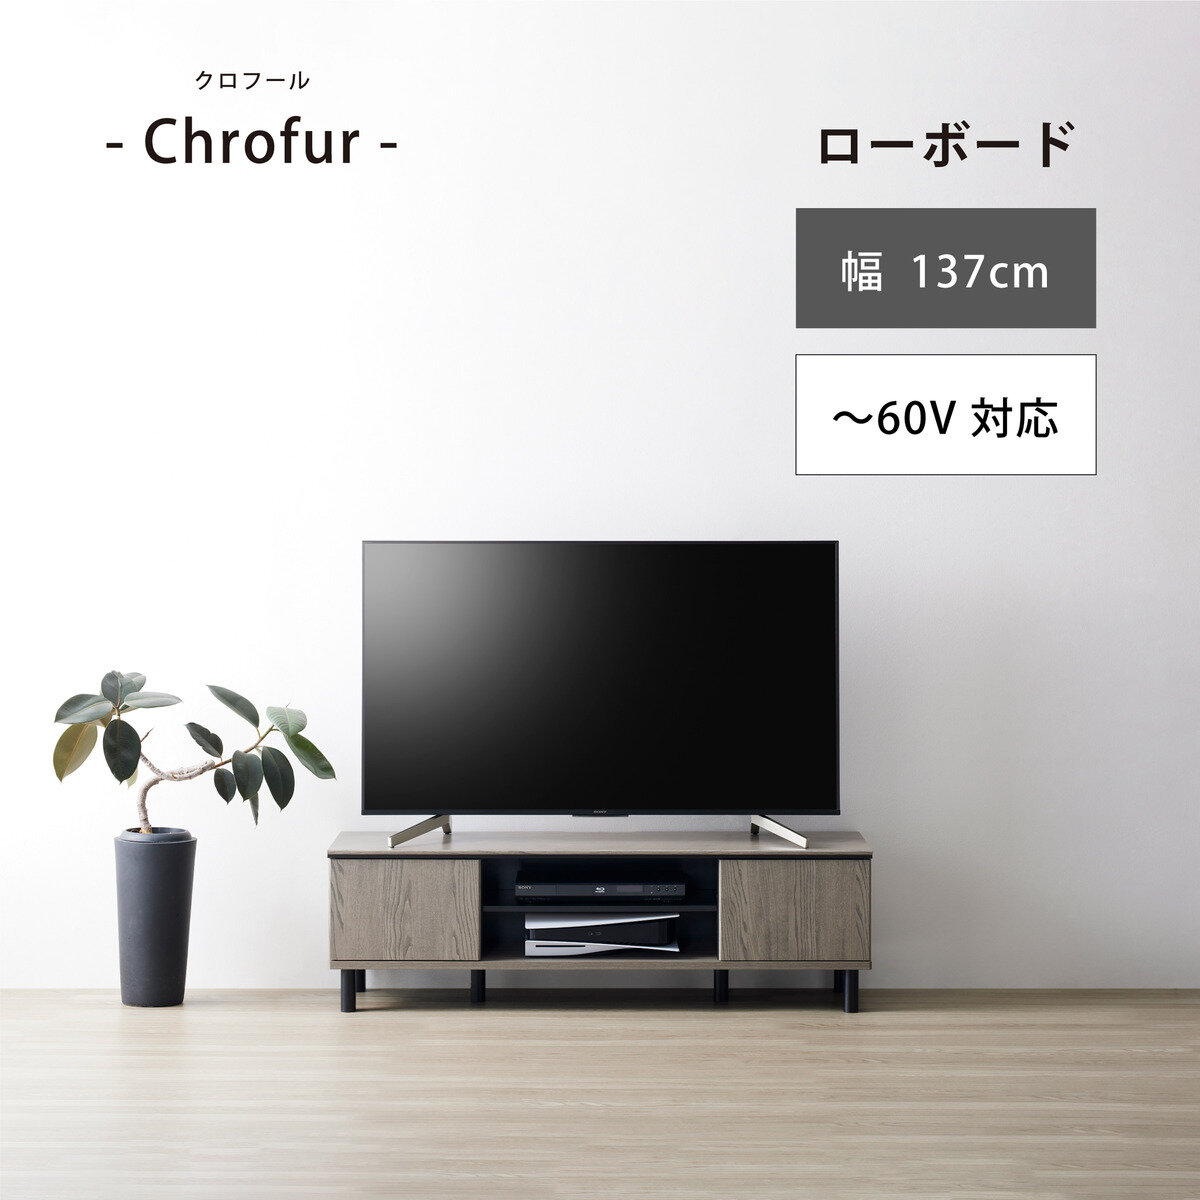 朝日木材加工 テレビ台 Chrofur CHC-4014AV | Costco Japan